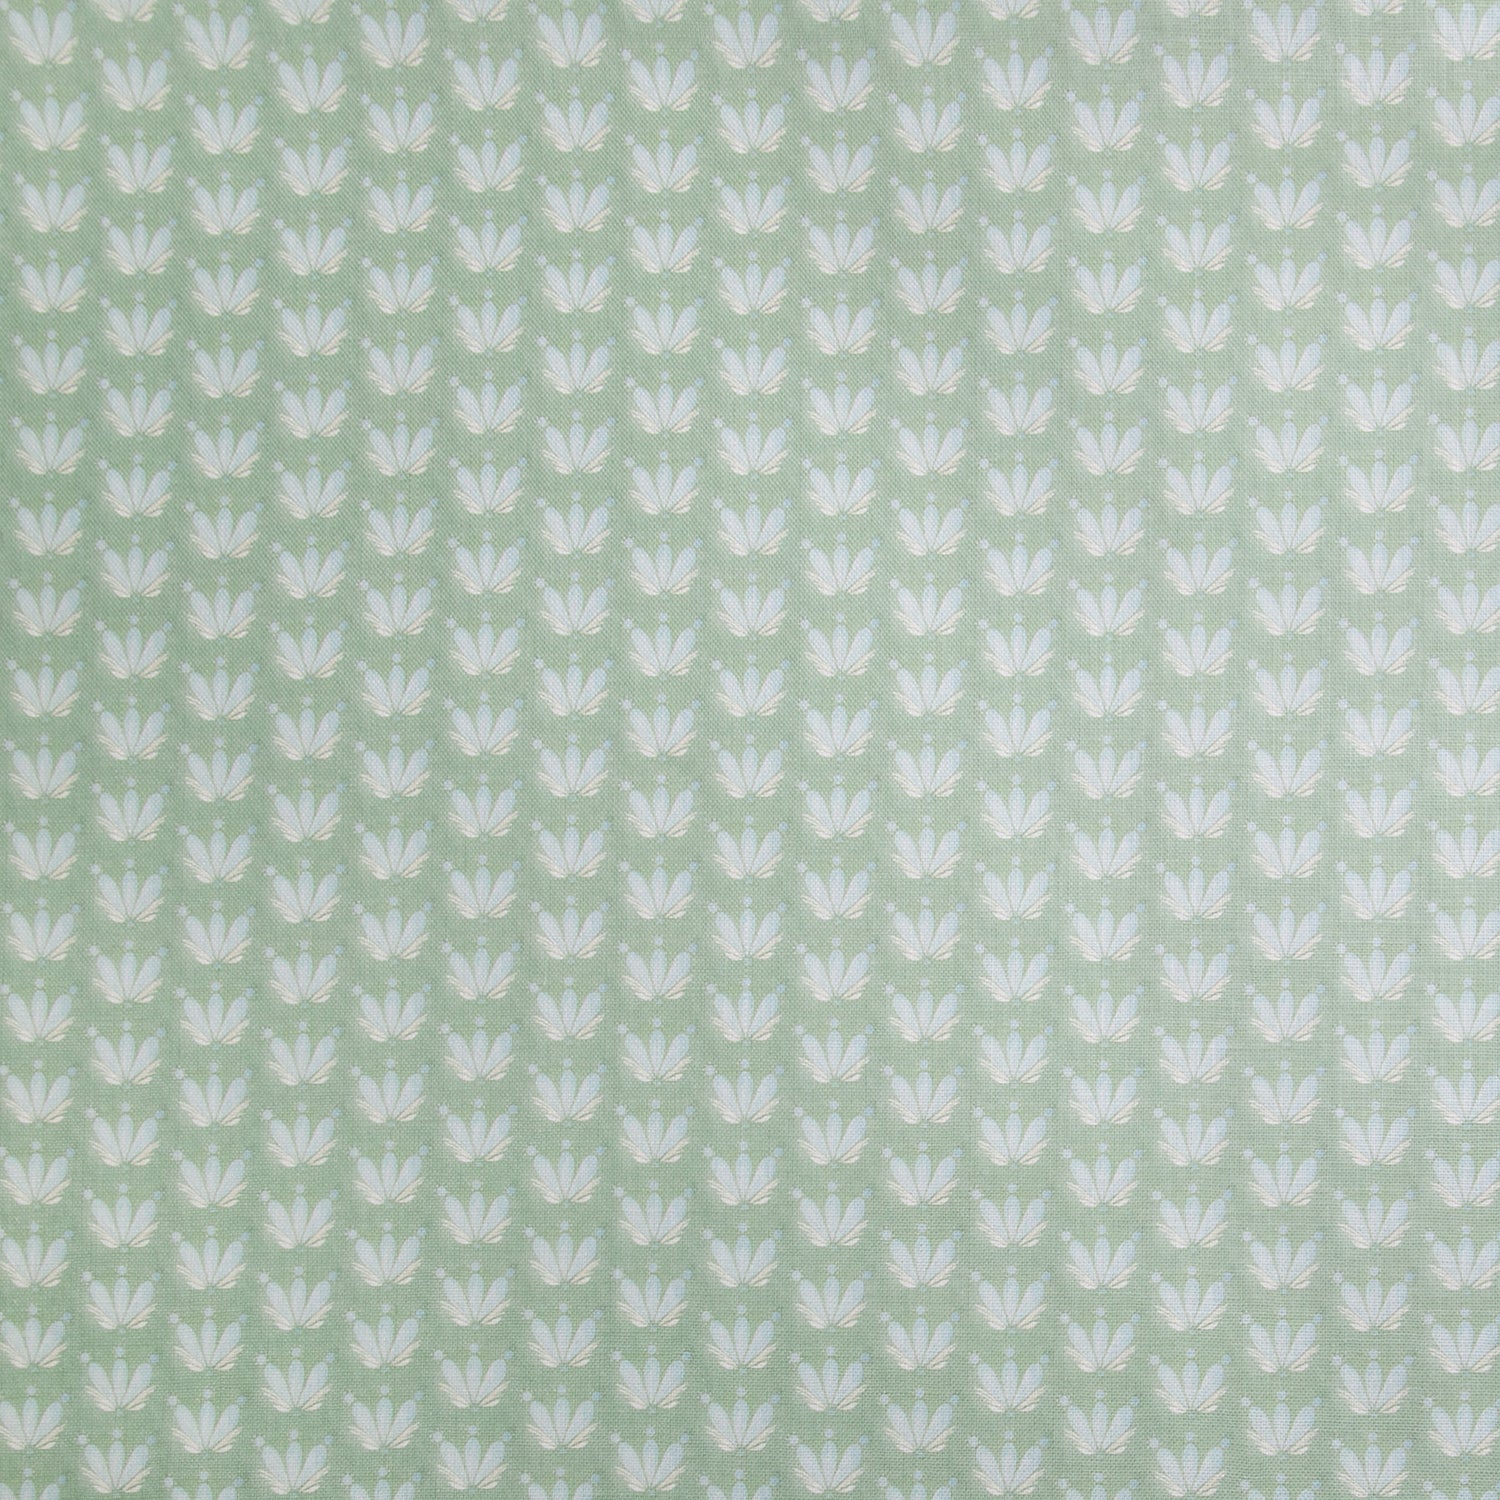 Blue & Green Floral Drop Repeat Linen Print